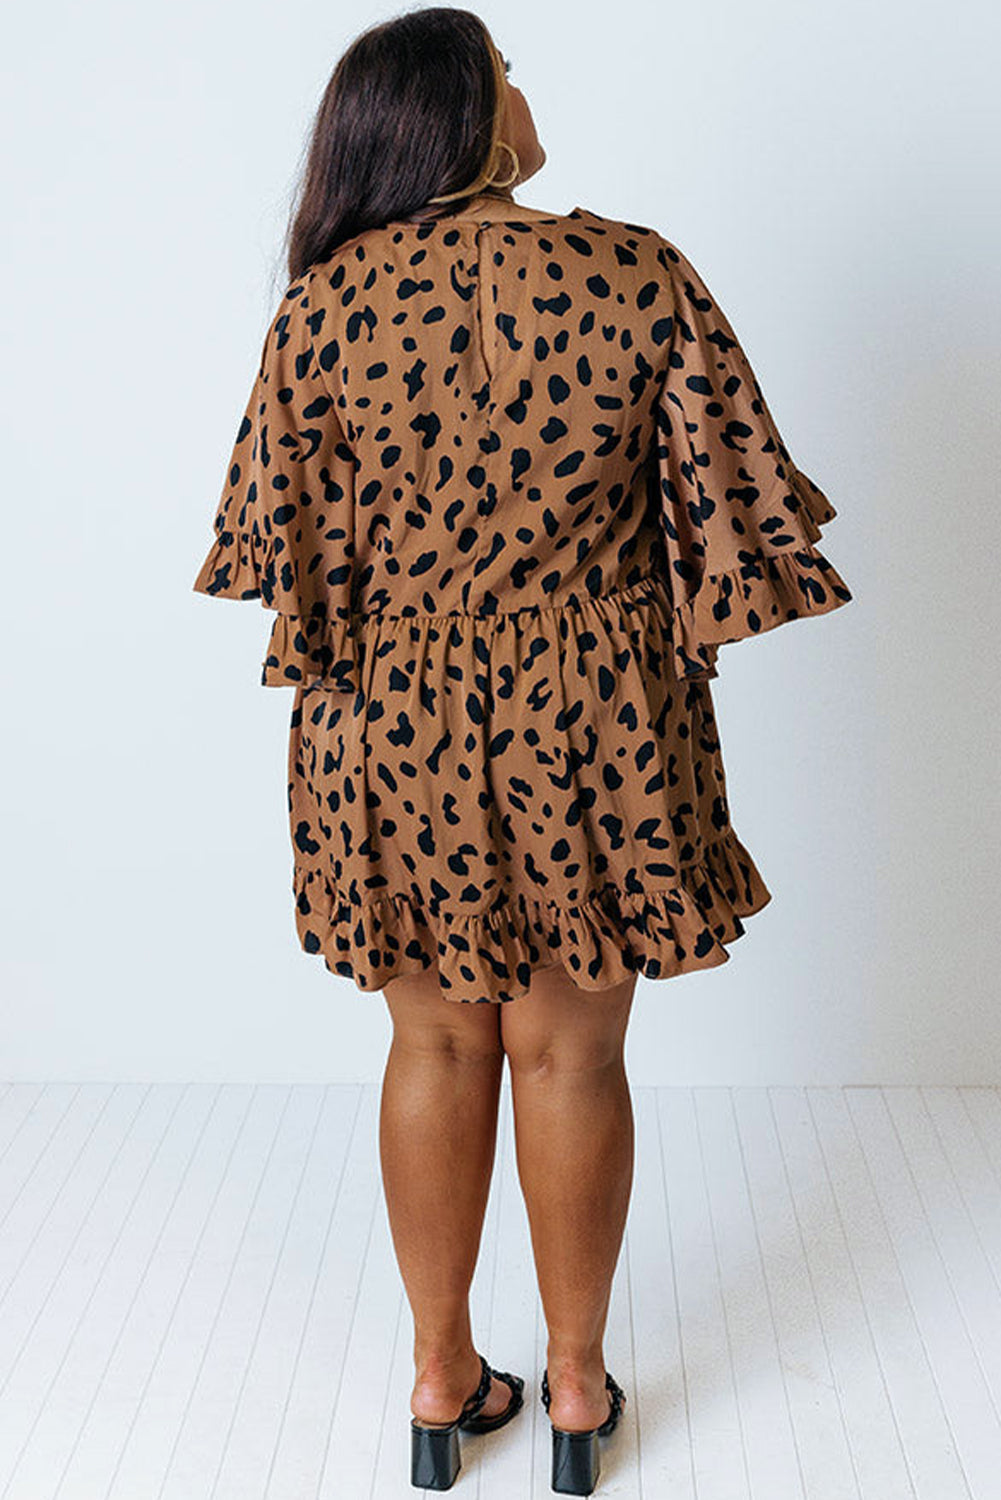 Plus Size Leopard Shift Dress with Ruffle Plus Size Dresses JT's Designer Fashion